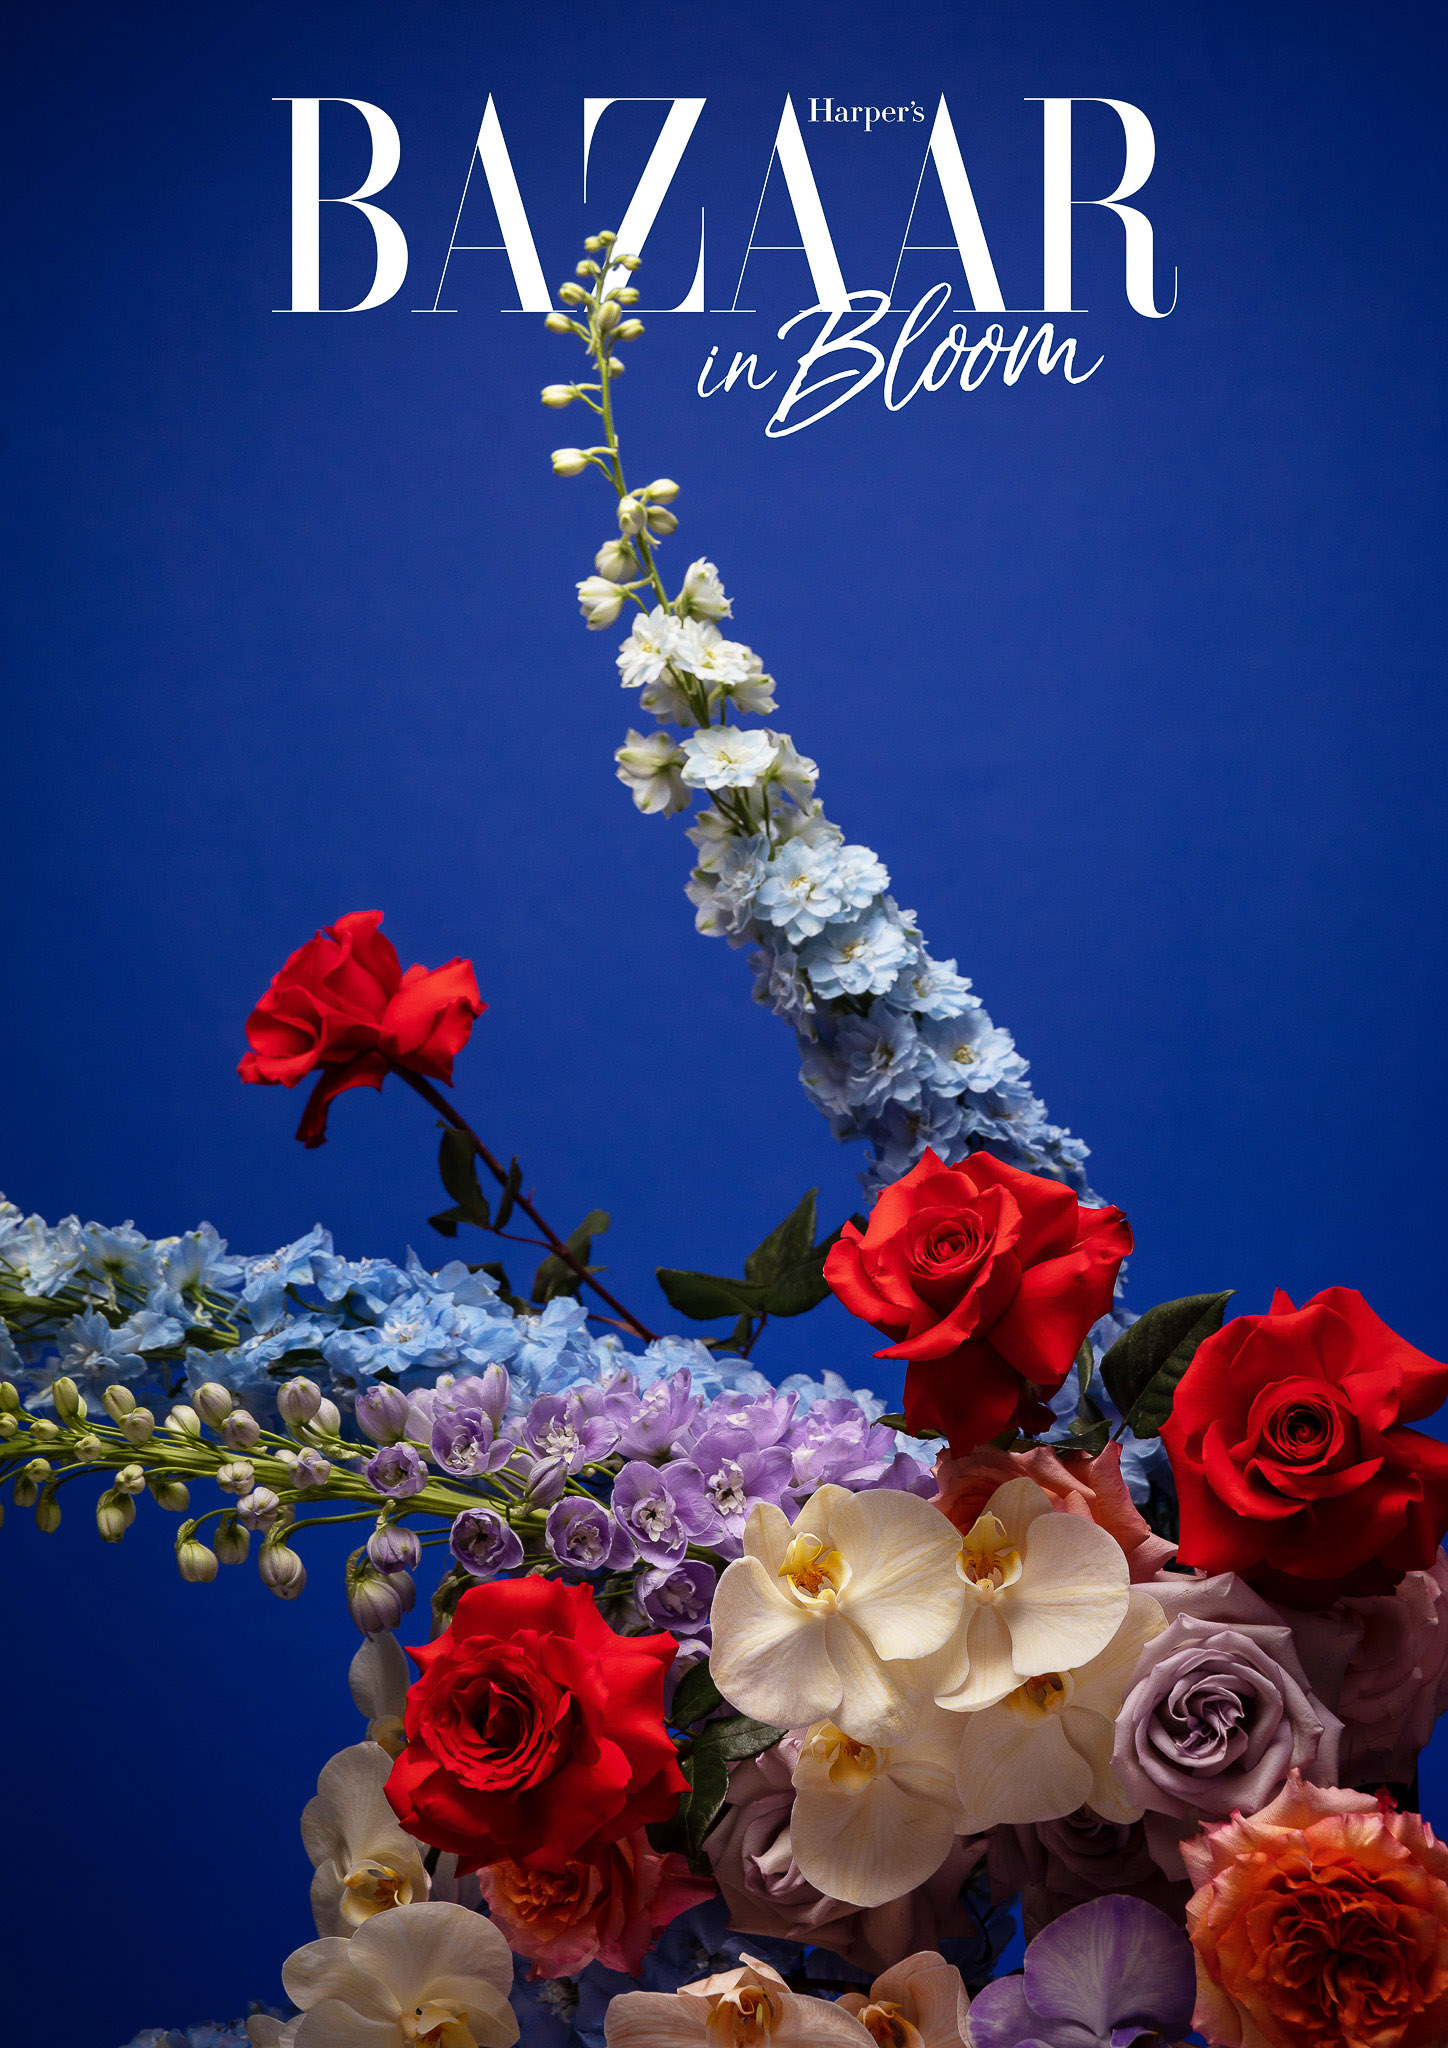 Harpers Bazaar in Bloom